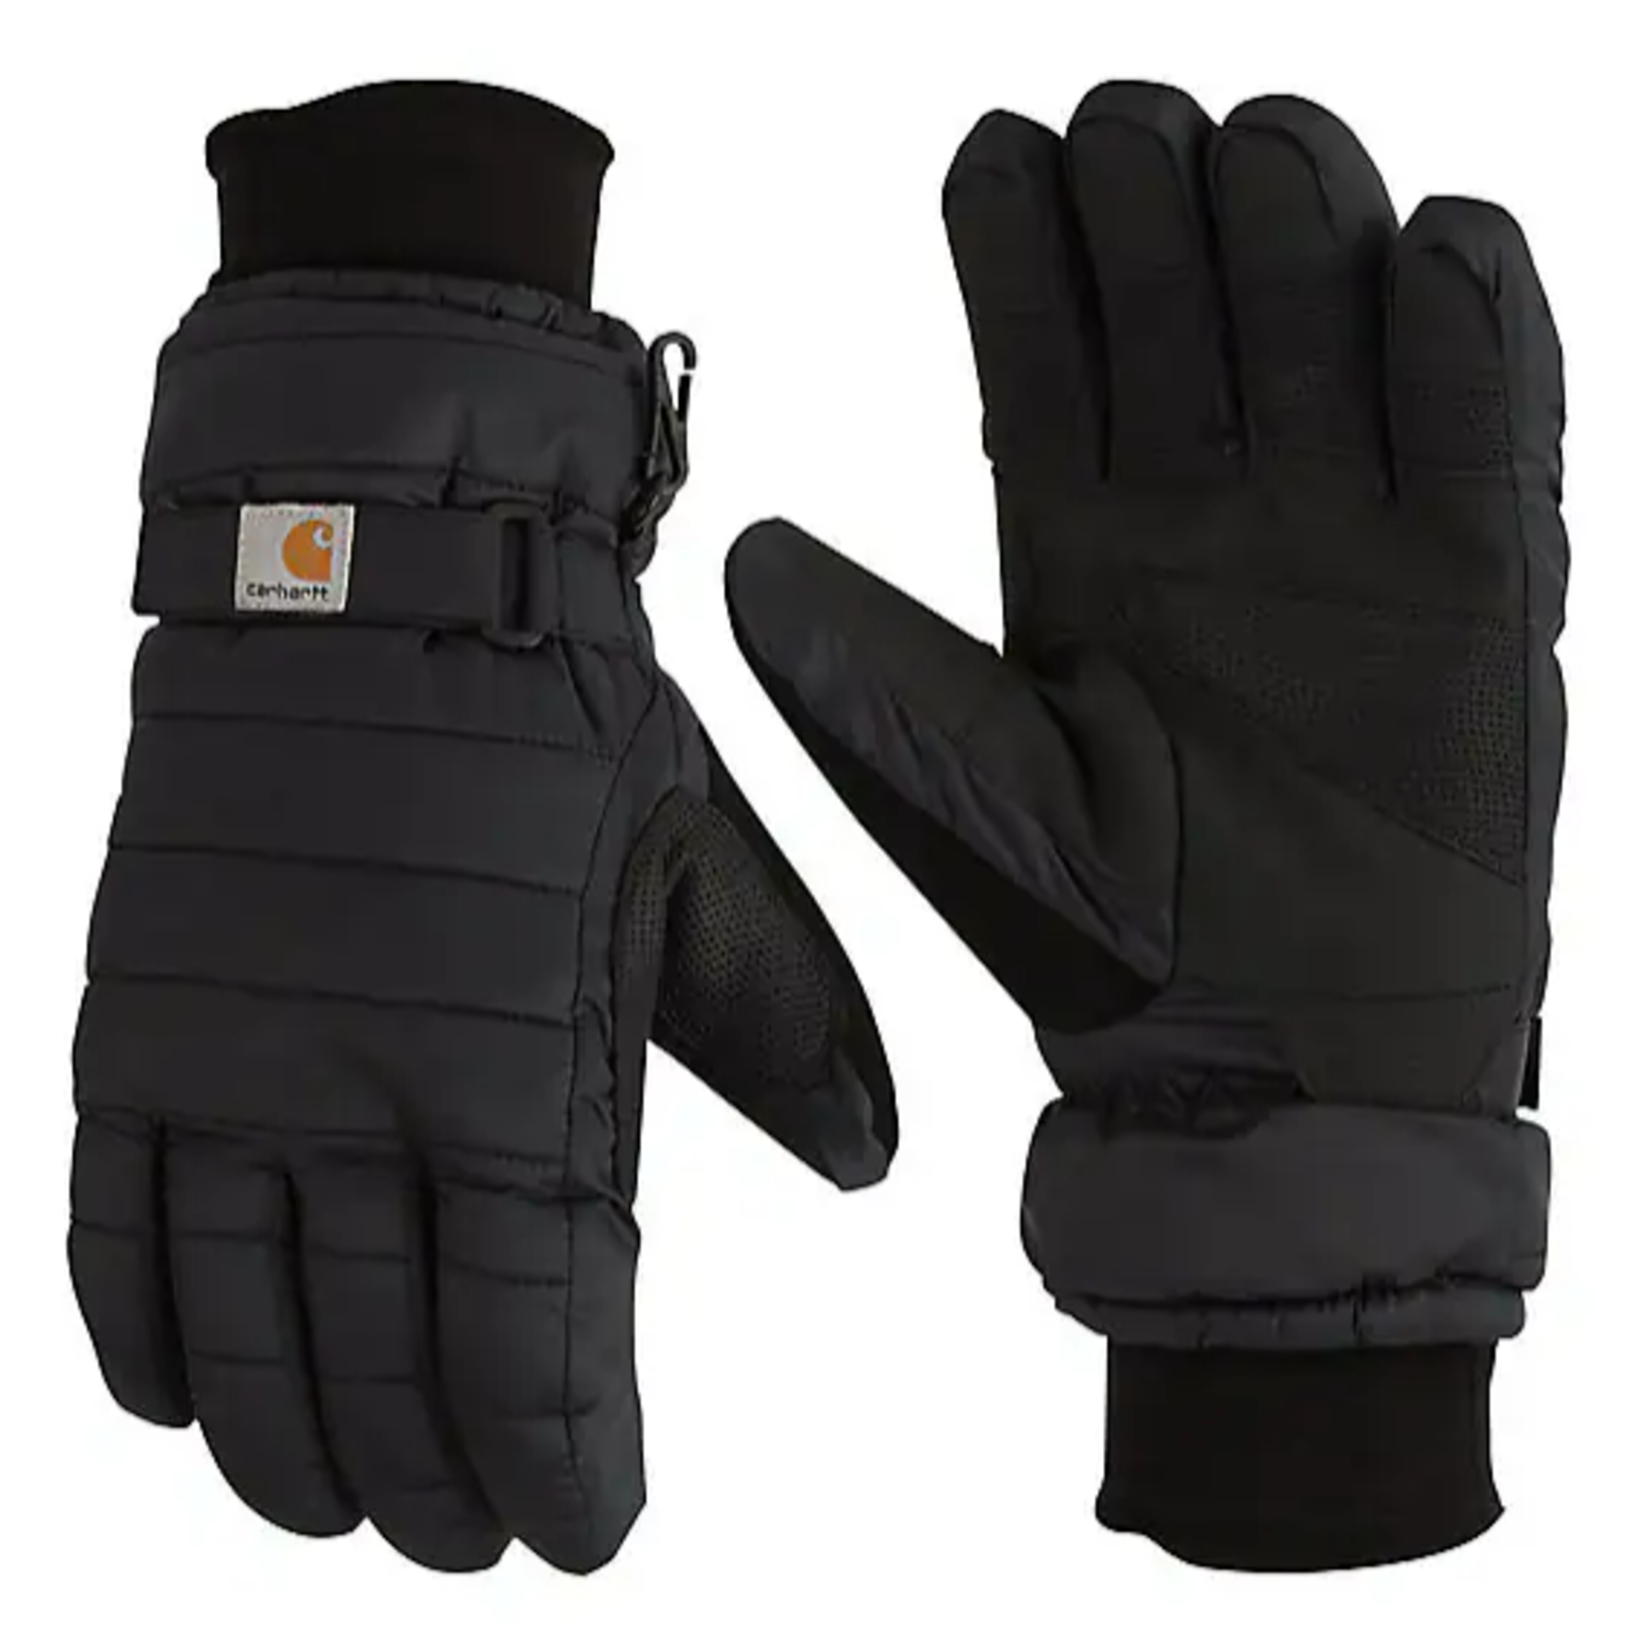 https://cdn.shoplightspeed.com/shops/641436/files/60508966/1652x1652x2/carhartt-carhartt-womens-quilted-waterproof-gloves.jpg